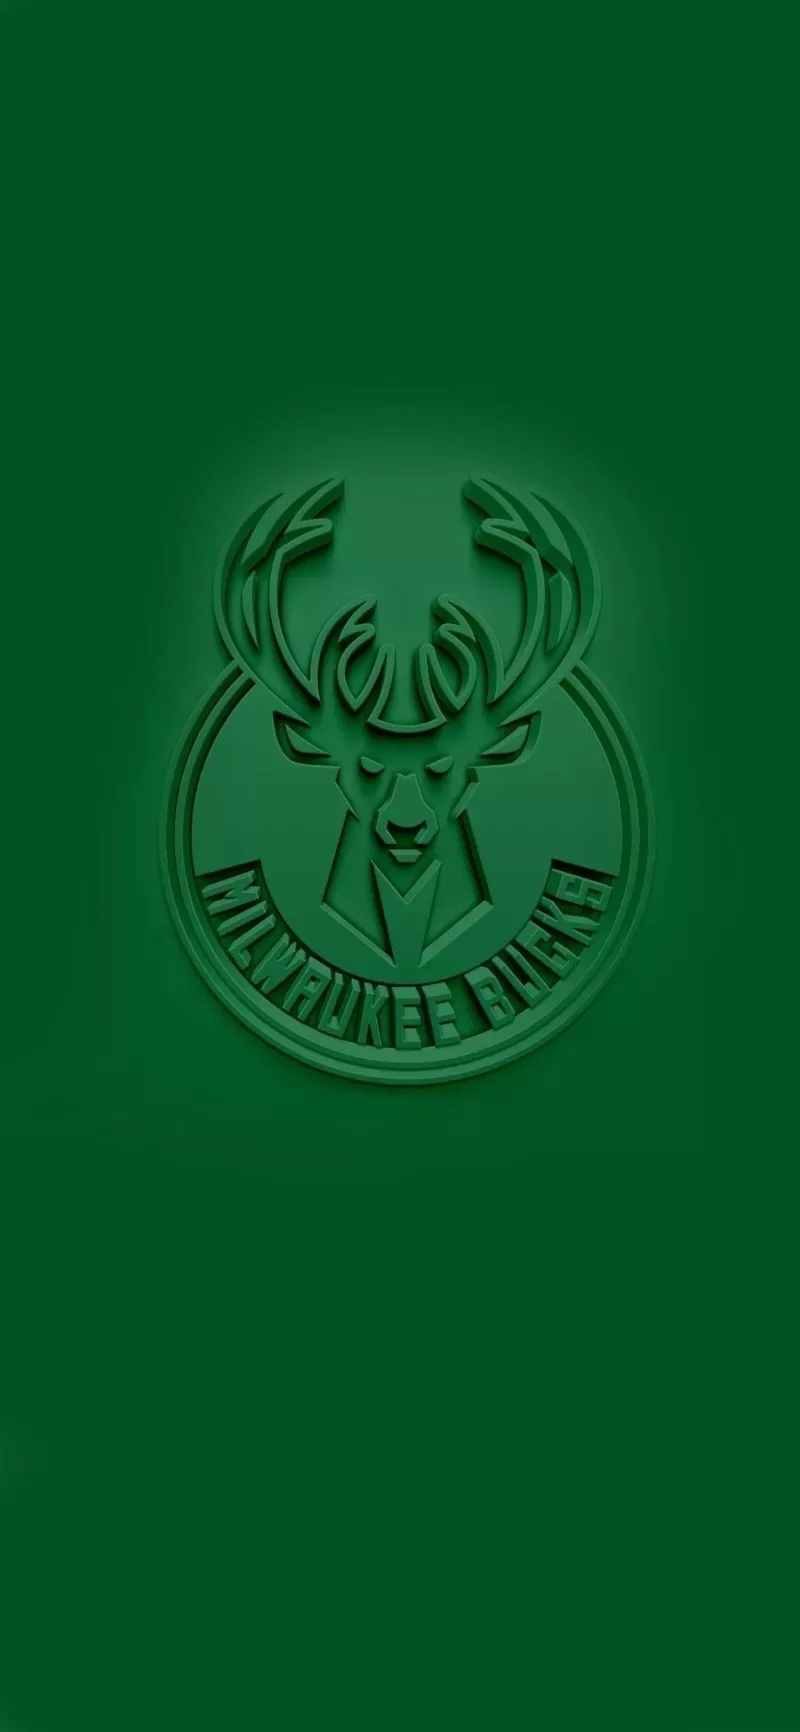 雄鹿队logo壁纸图片